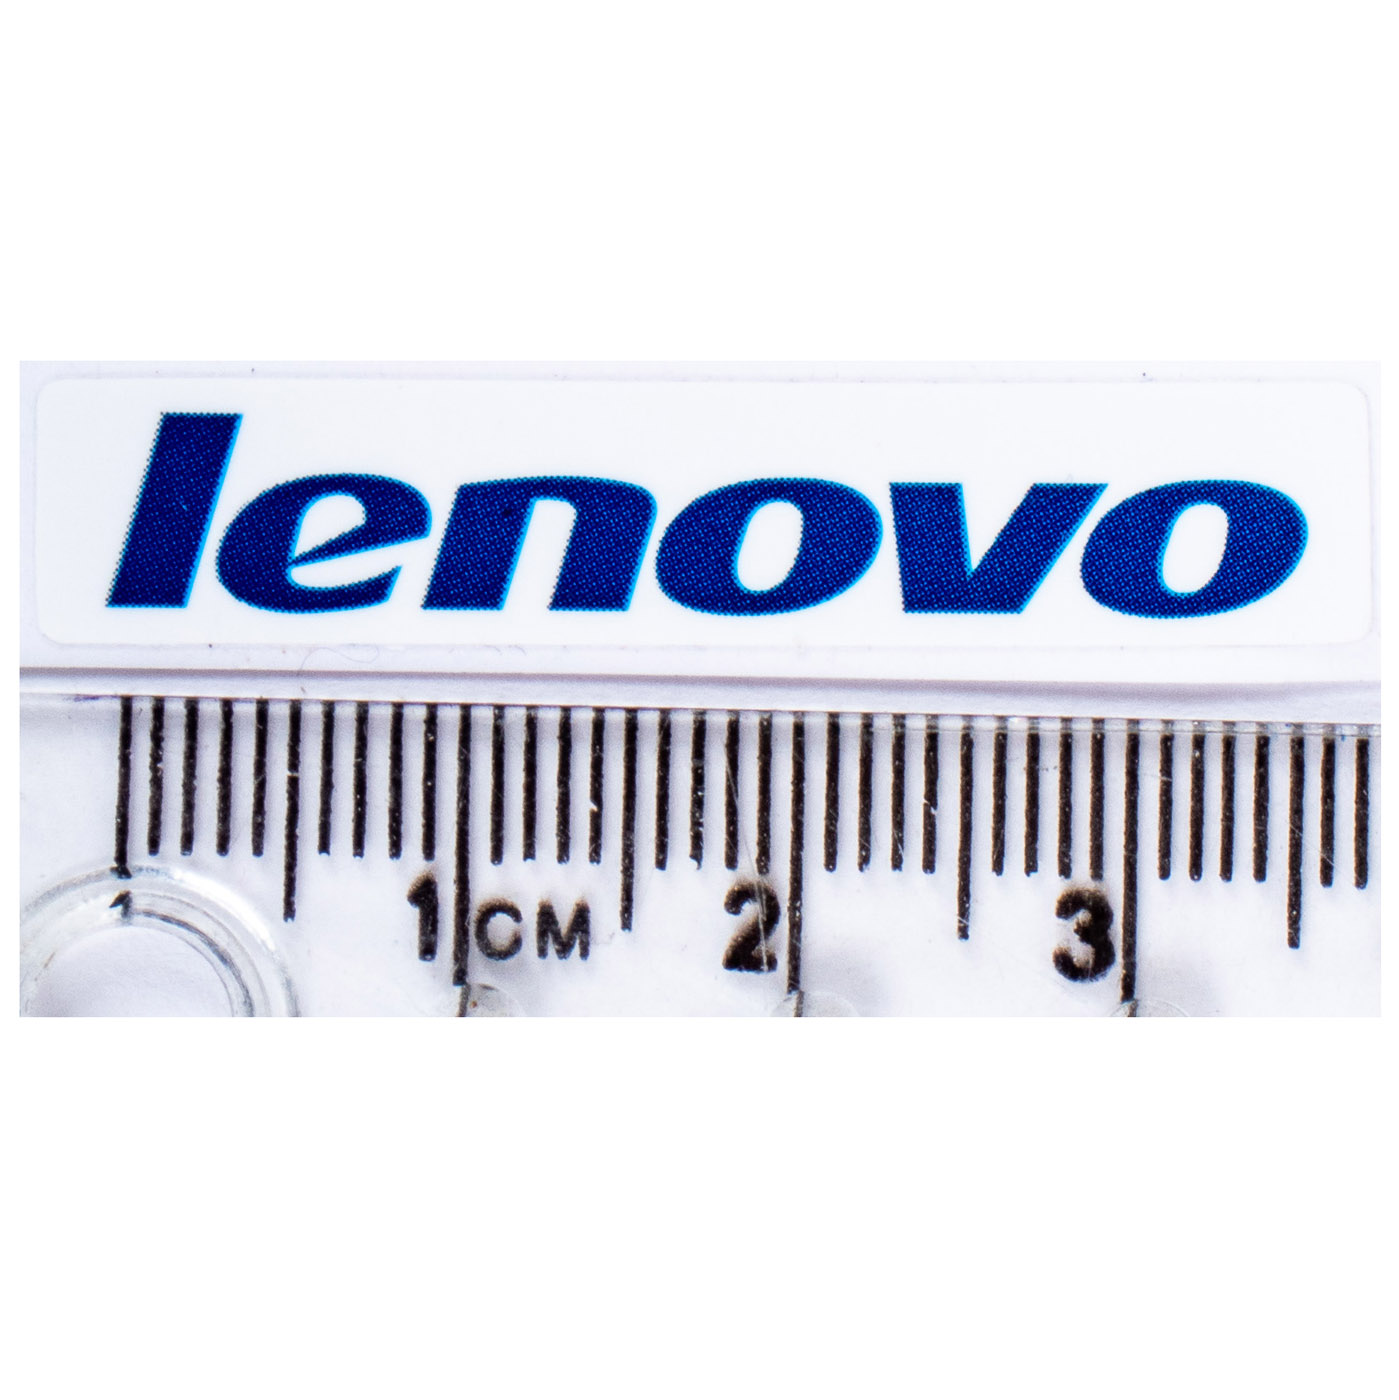 Naklejka Lenovo blue 6 x 36 mm